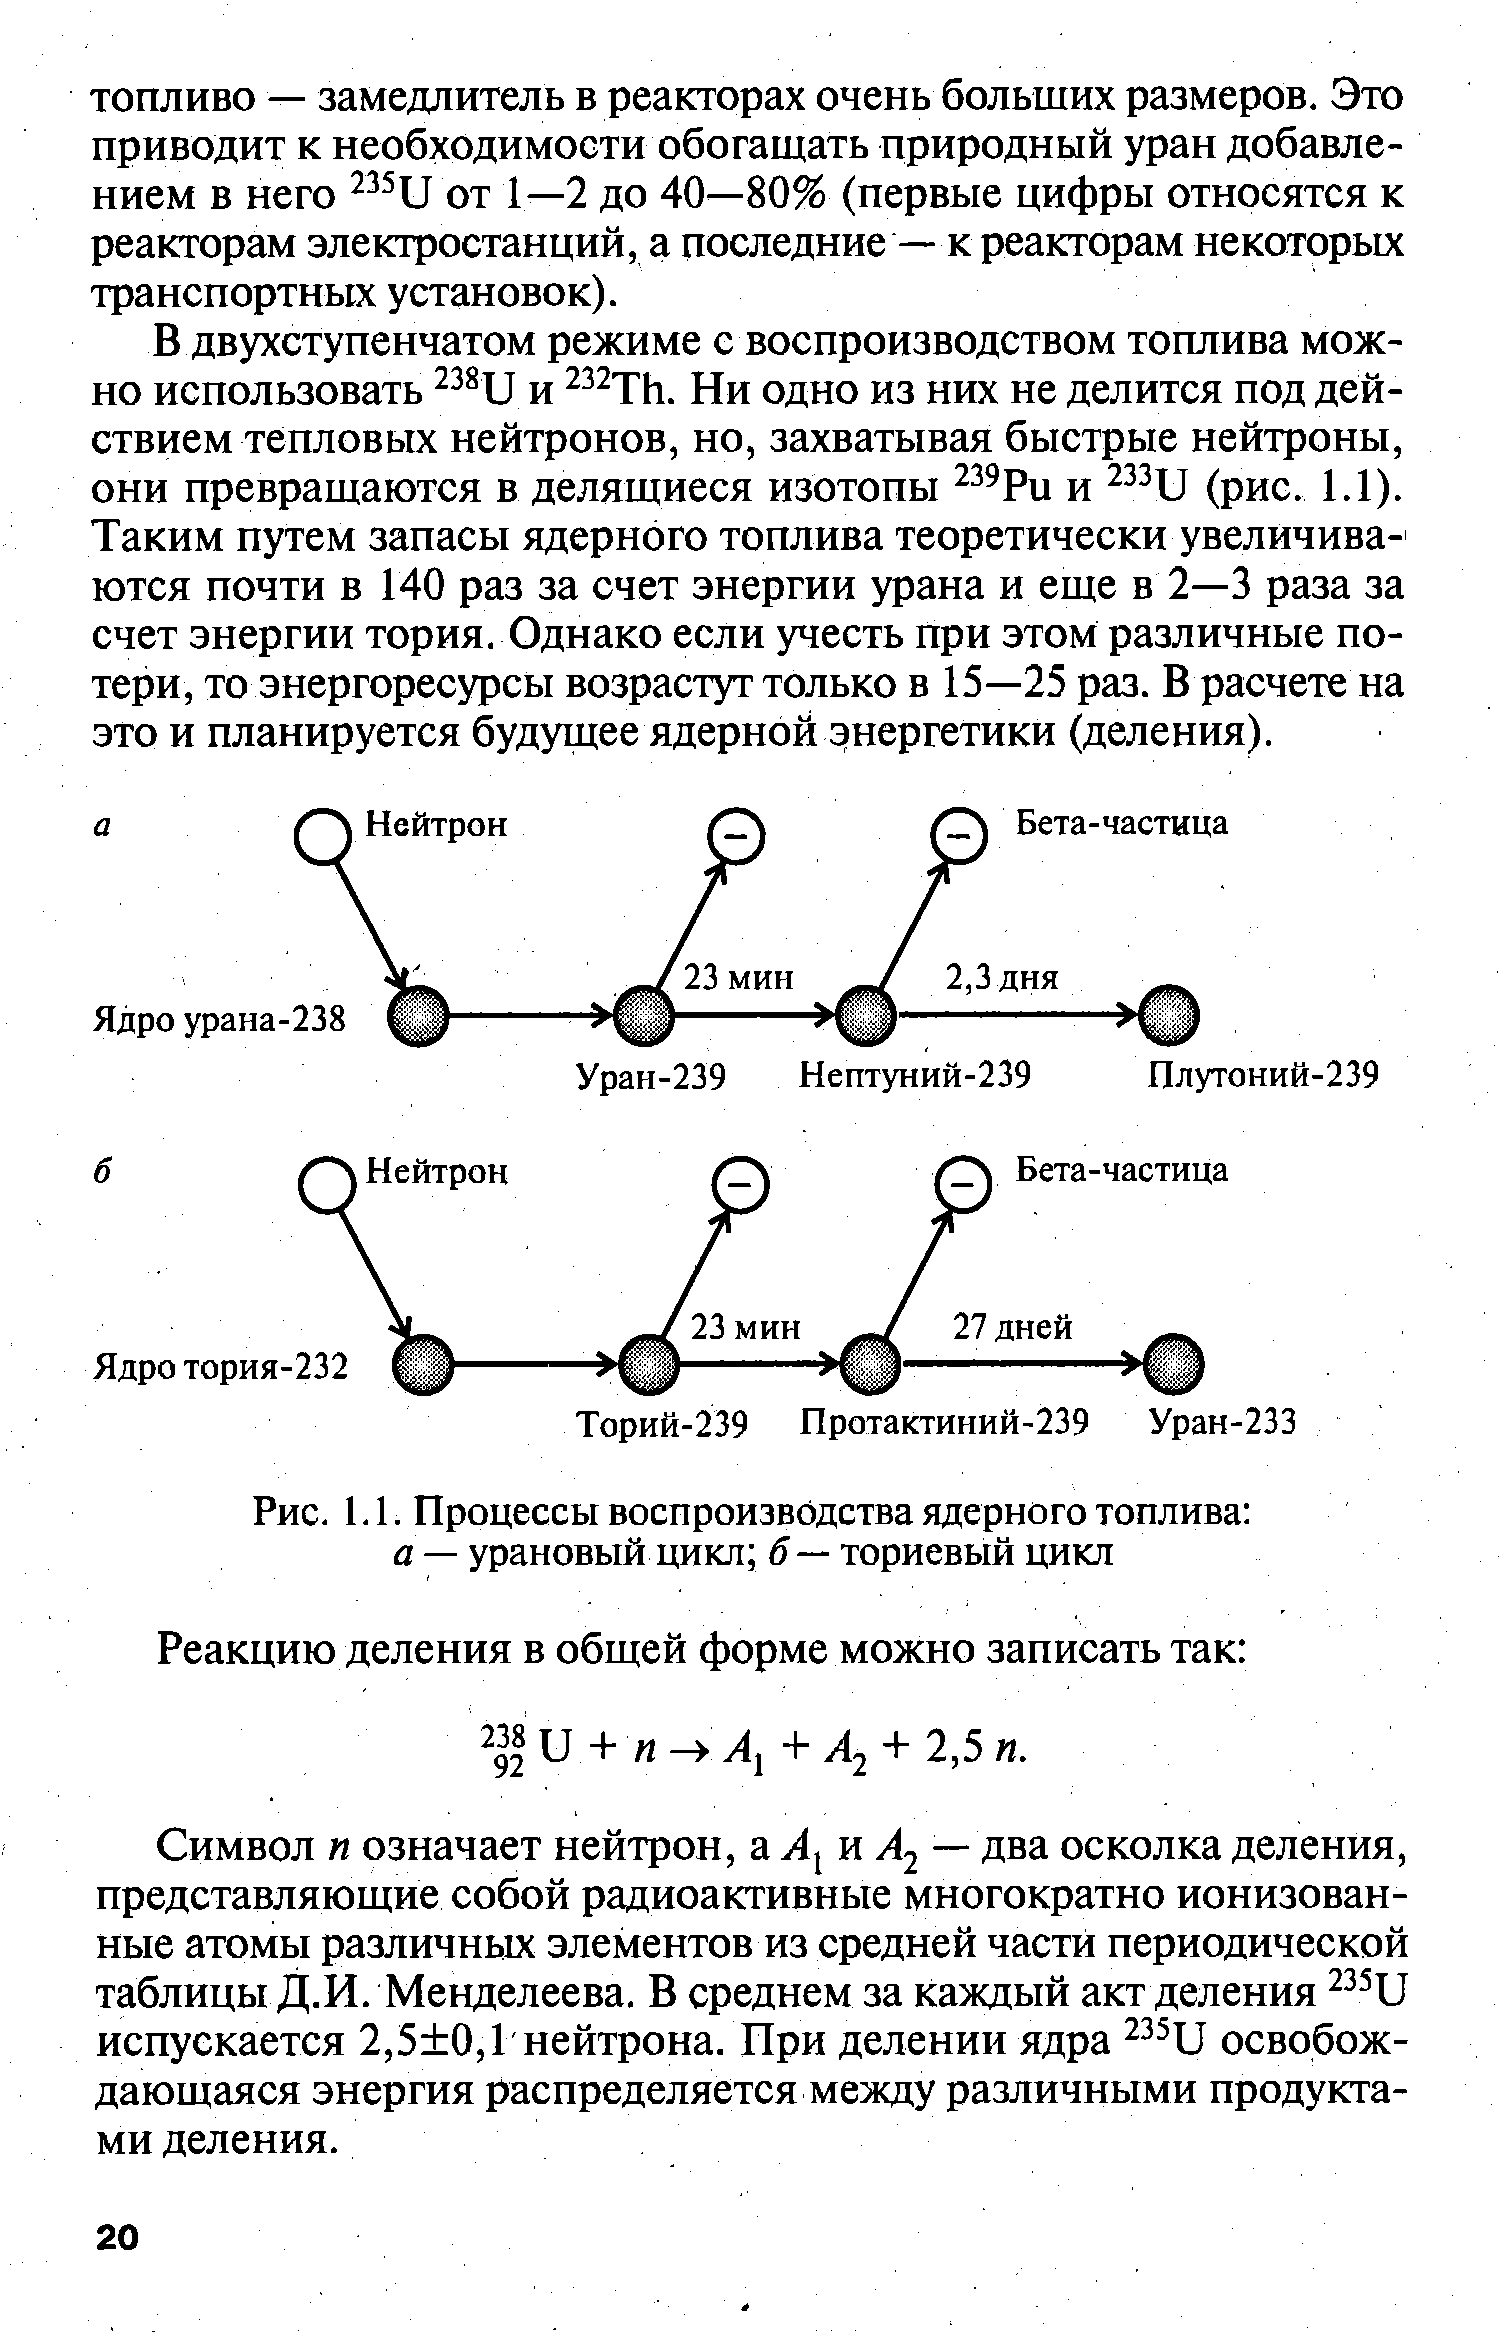 Рис. 1.1. Процессы воспроизводства ядерного топлива а — урановый цикл б — ториевый цикл
